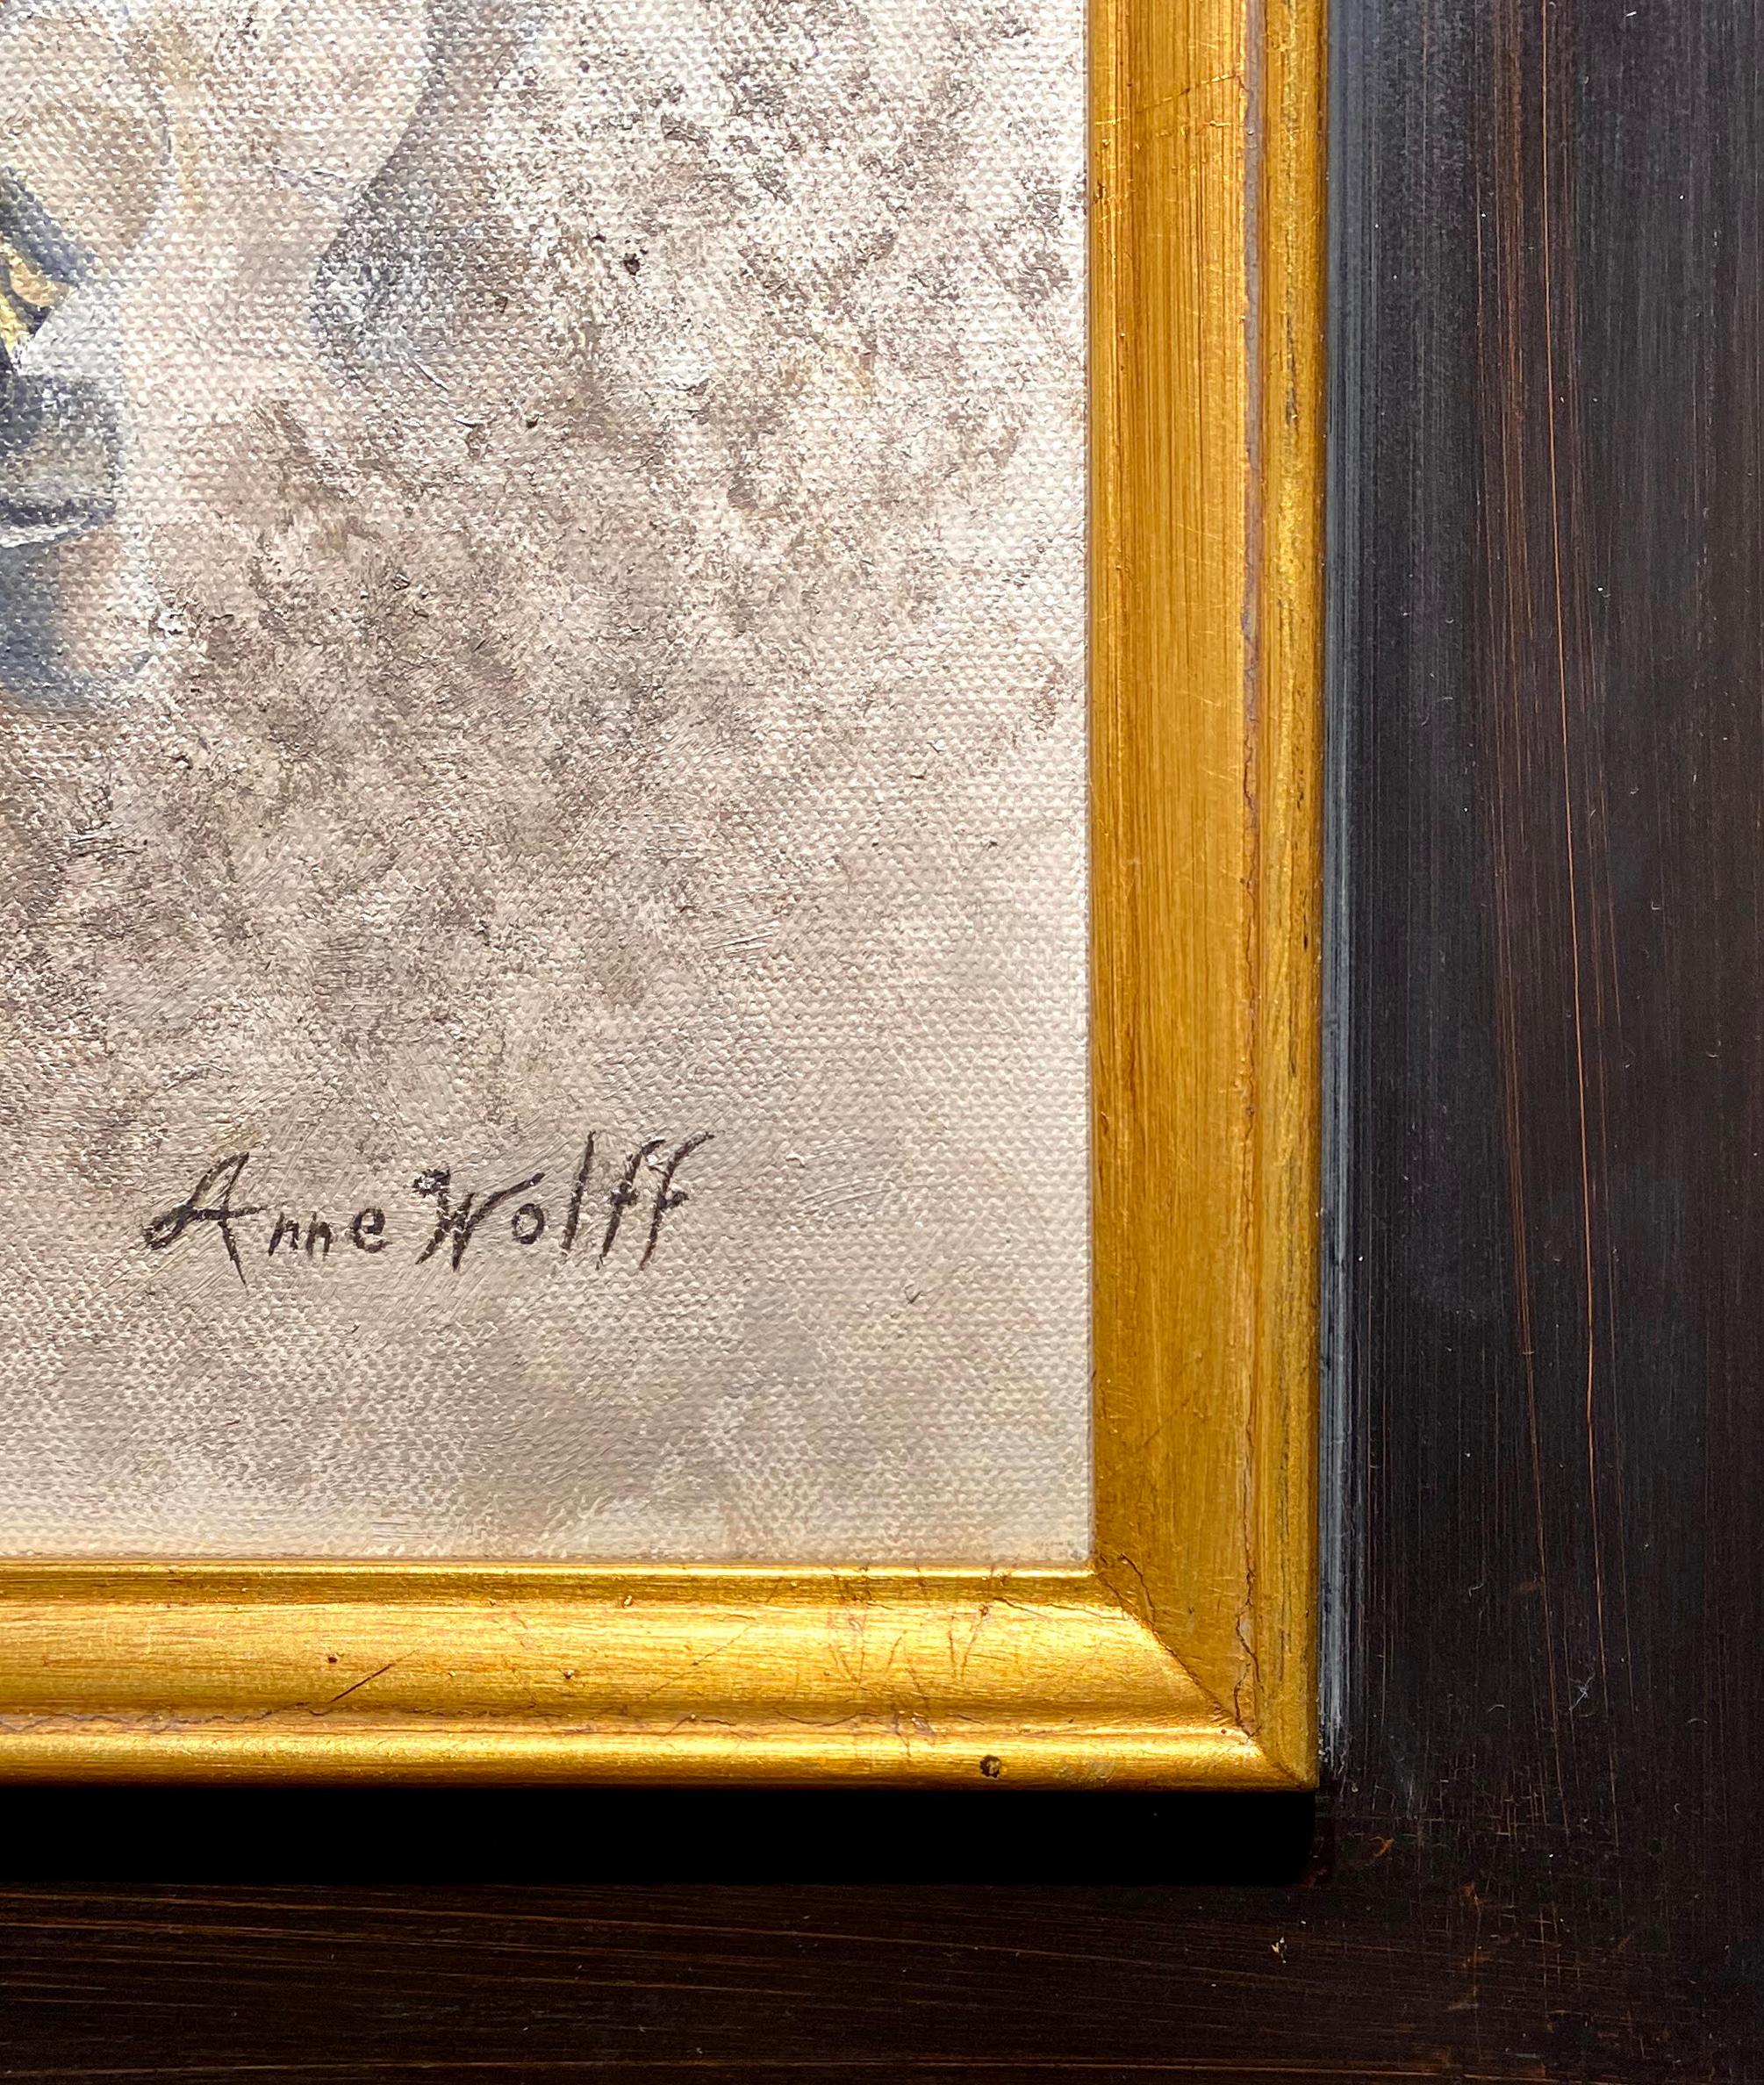 Anne Wolff, 